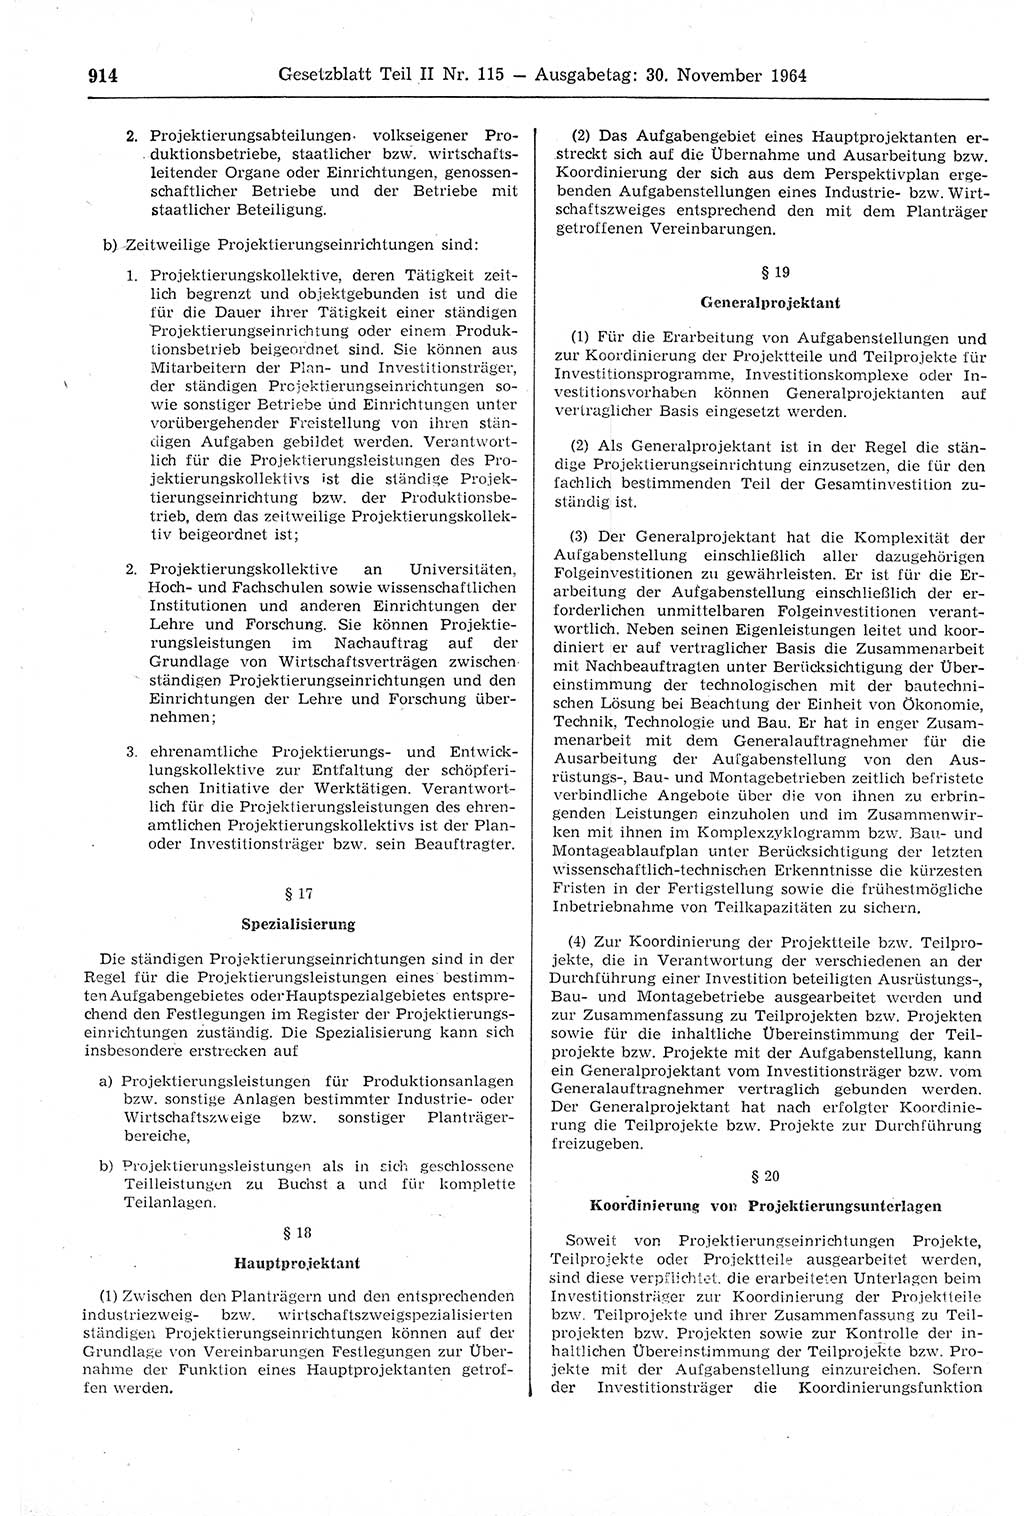 Gesetzblatt (GBl.) der Deutschen Demokratischen Republik (DDR) Teil ⅠⅠ 1964, Seite 914 (GBl. DDR ⅠⅠ 1964, S. 914)